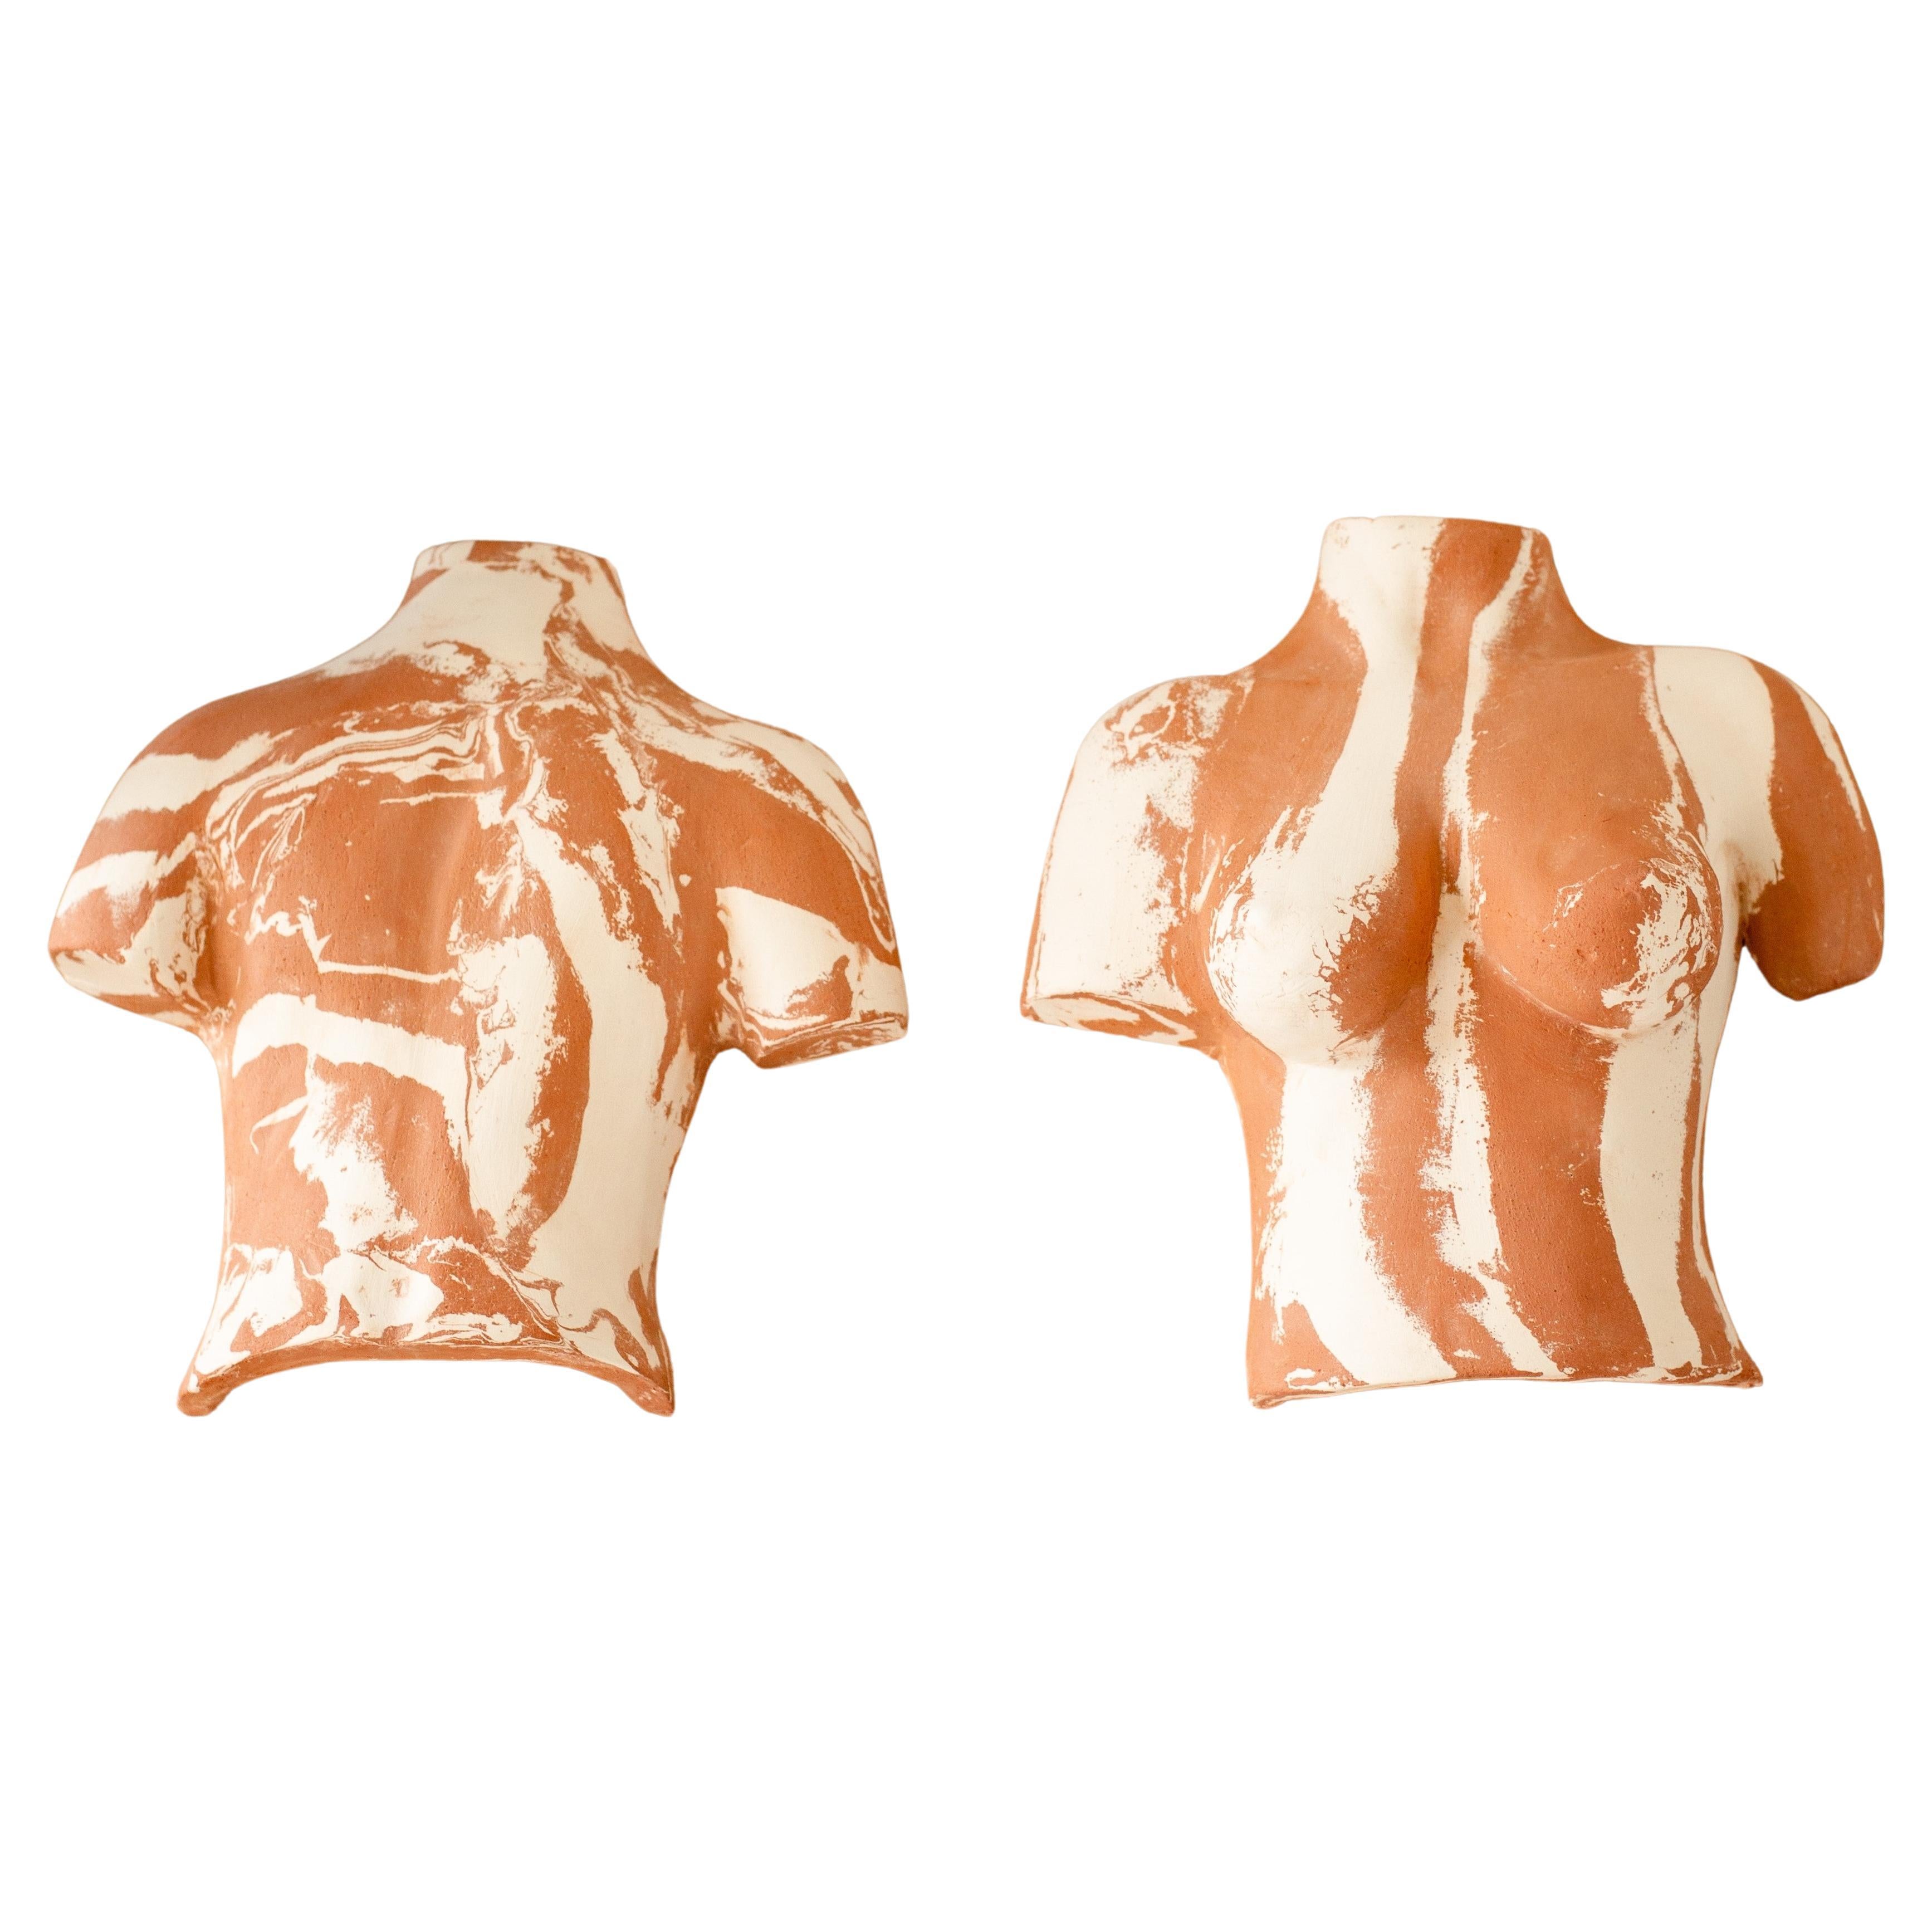 Terracotta Brut Body Sconces by Di Fretto